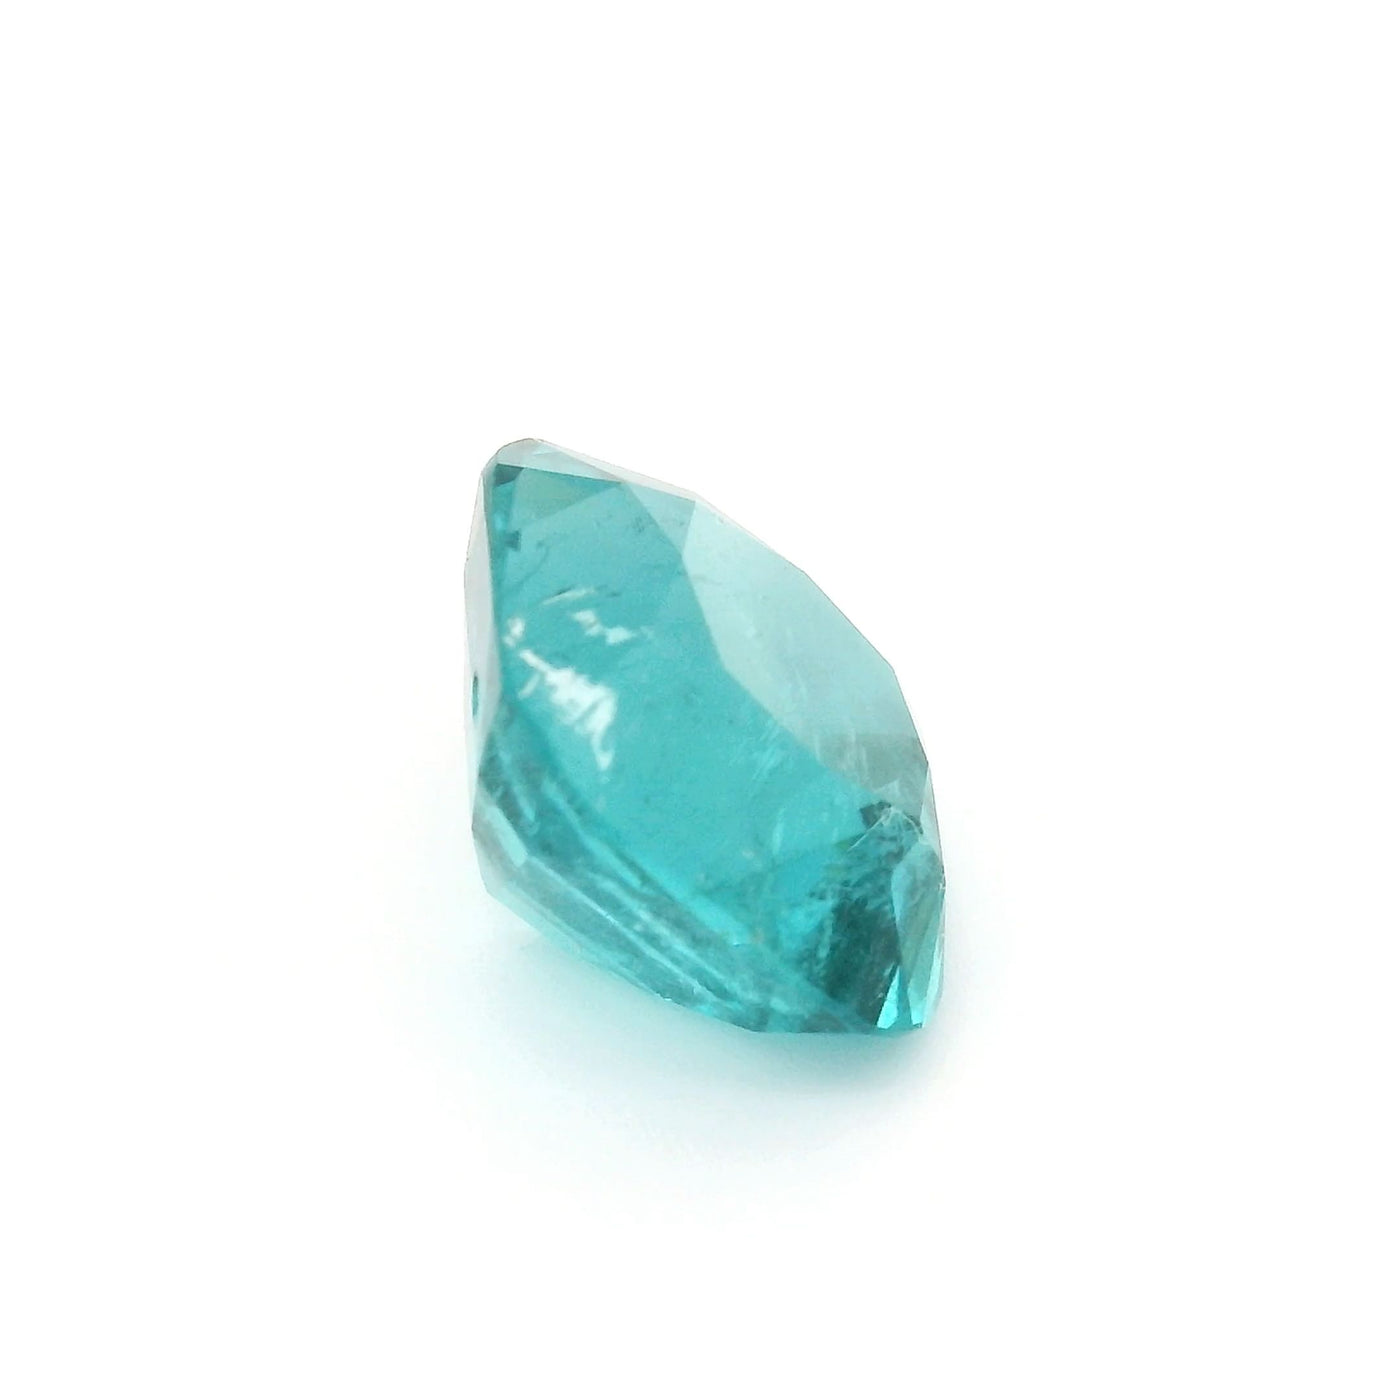 PRIX SUR DEMANDE Tourmaline blue lagoon 6.21 carats coussin